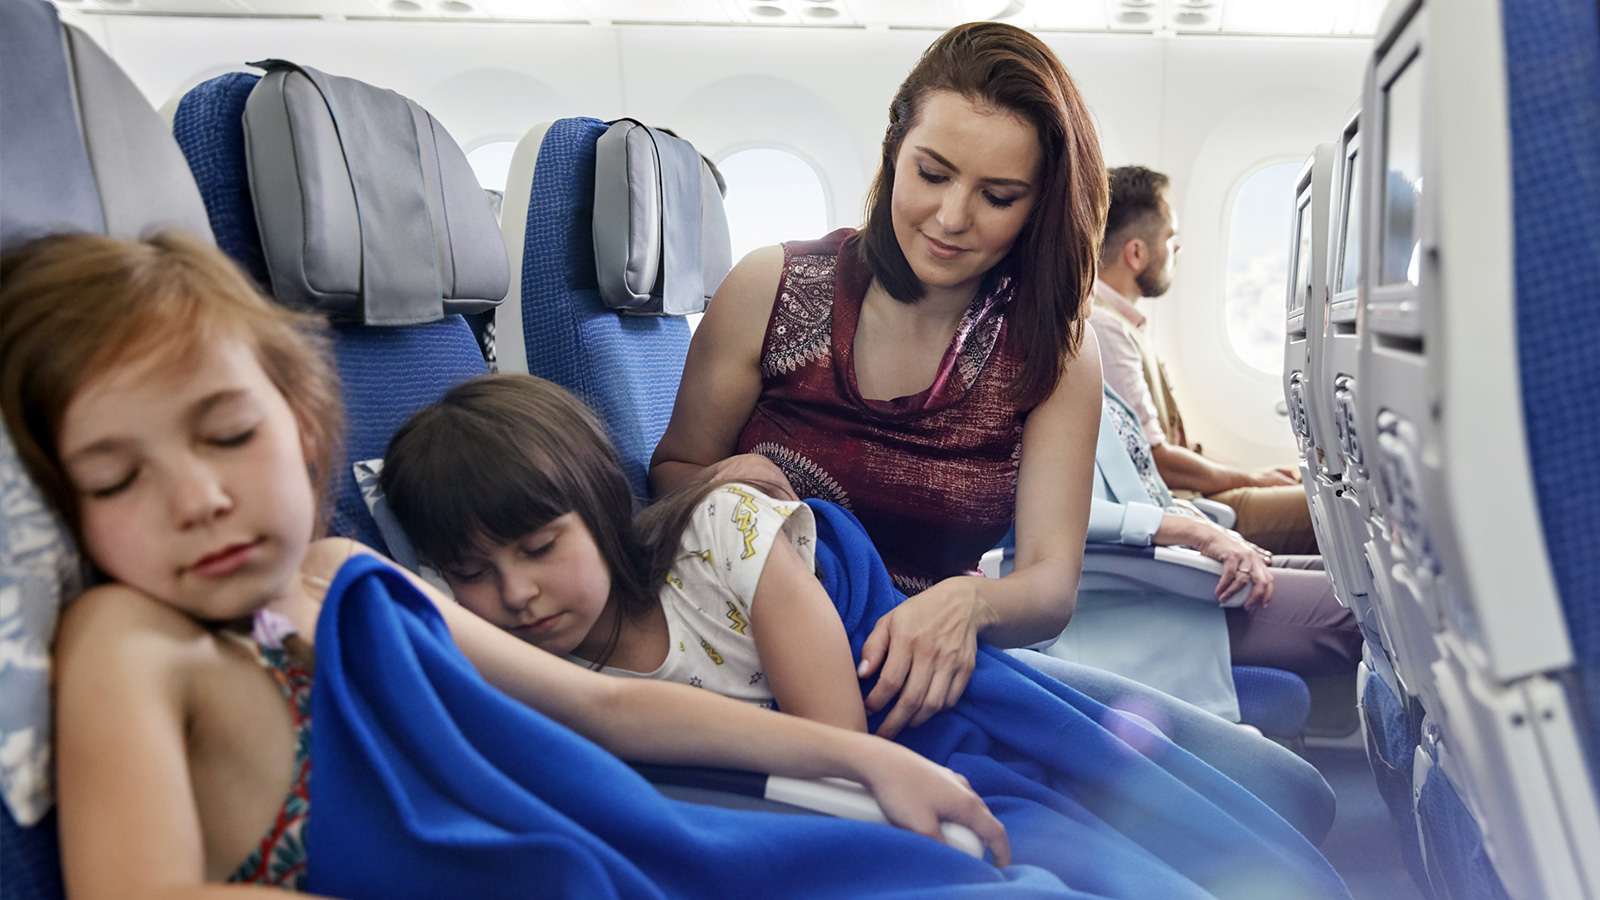 ‪خلال الرحلة الجوية بالطائرة اربطي طفلك بحزام الأمان طوال الوقت واصطحب سترات وأغطية فالطفل يصاب بالبرد بسرعة‬ (غيتي)